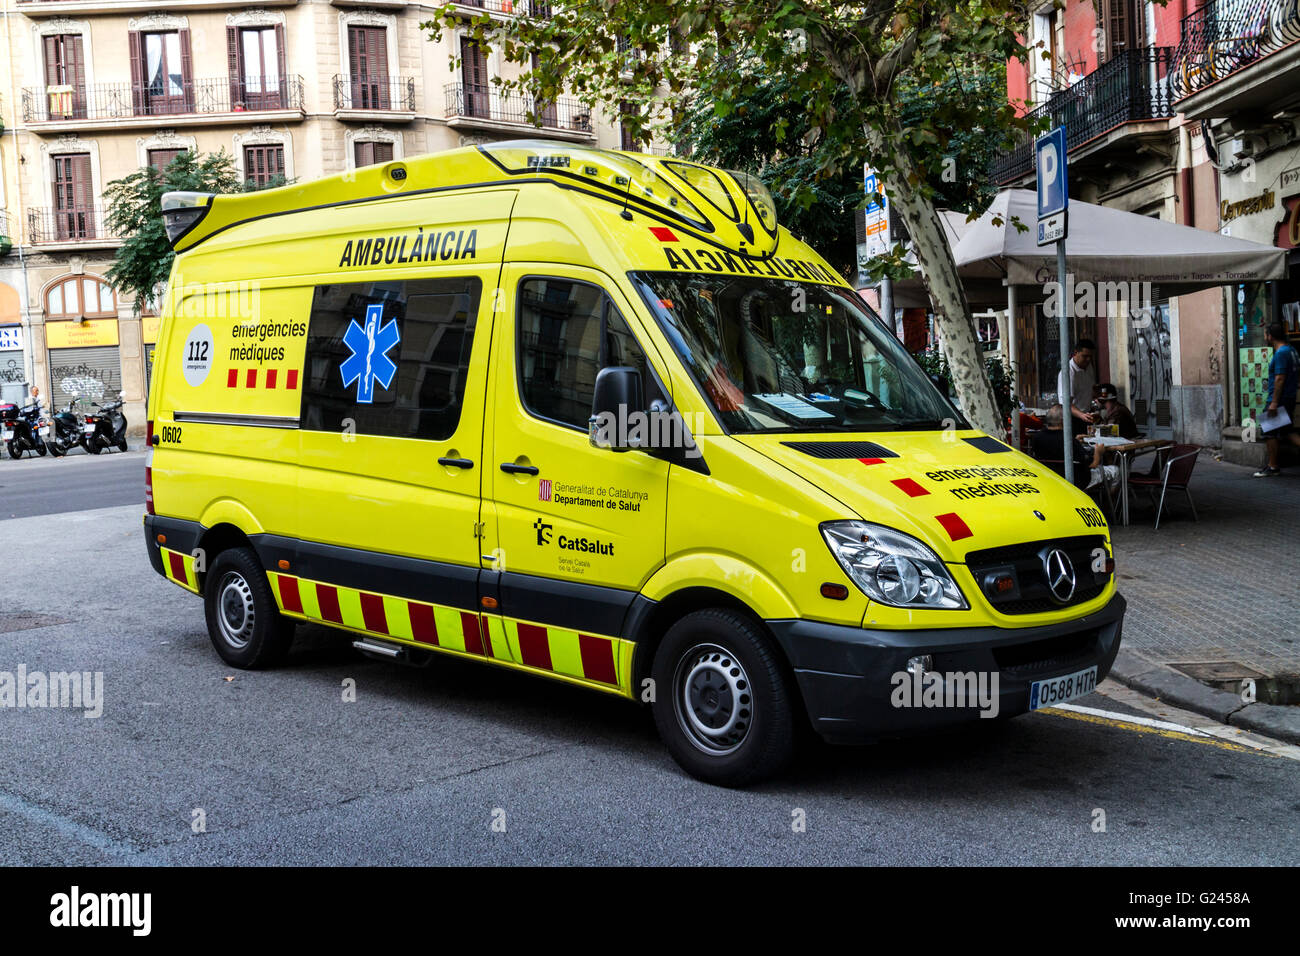 En ambulancia española llamada, Barcelona, Cataluña, España. Foto de stock